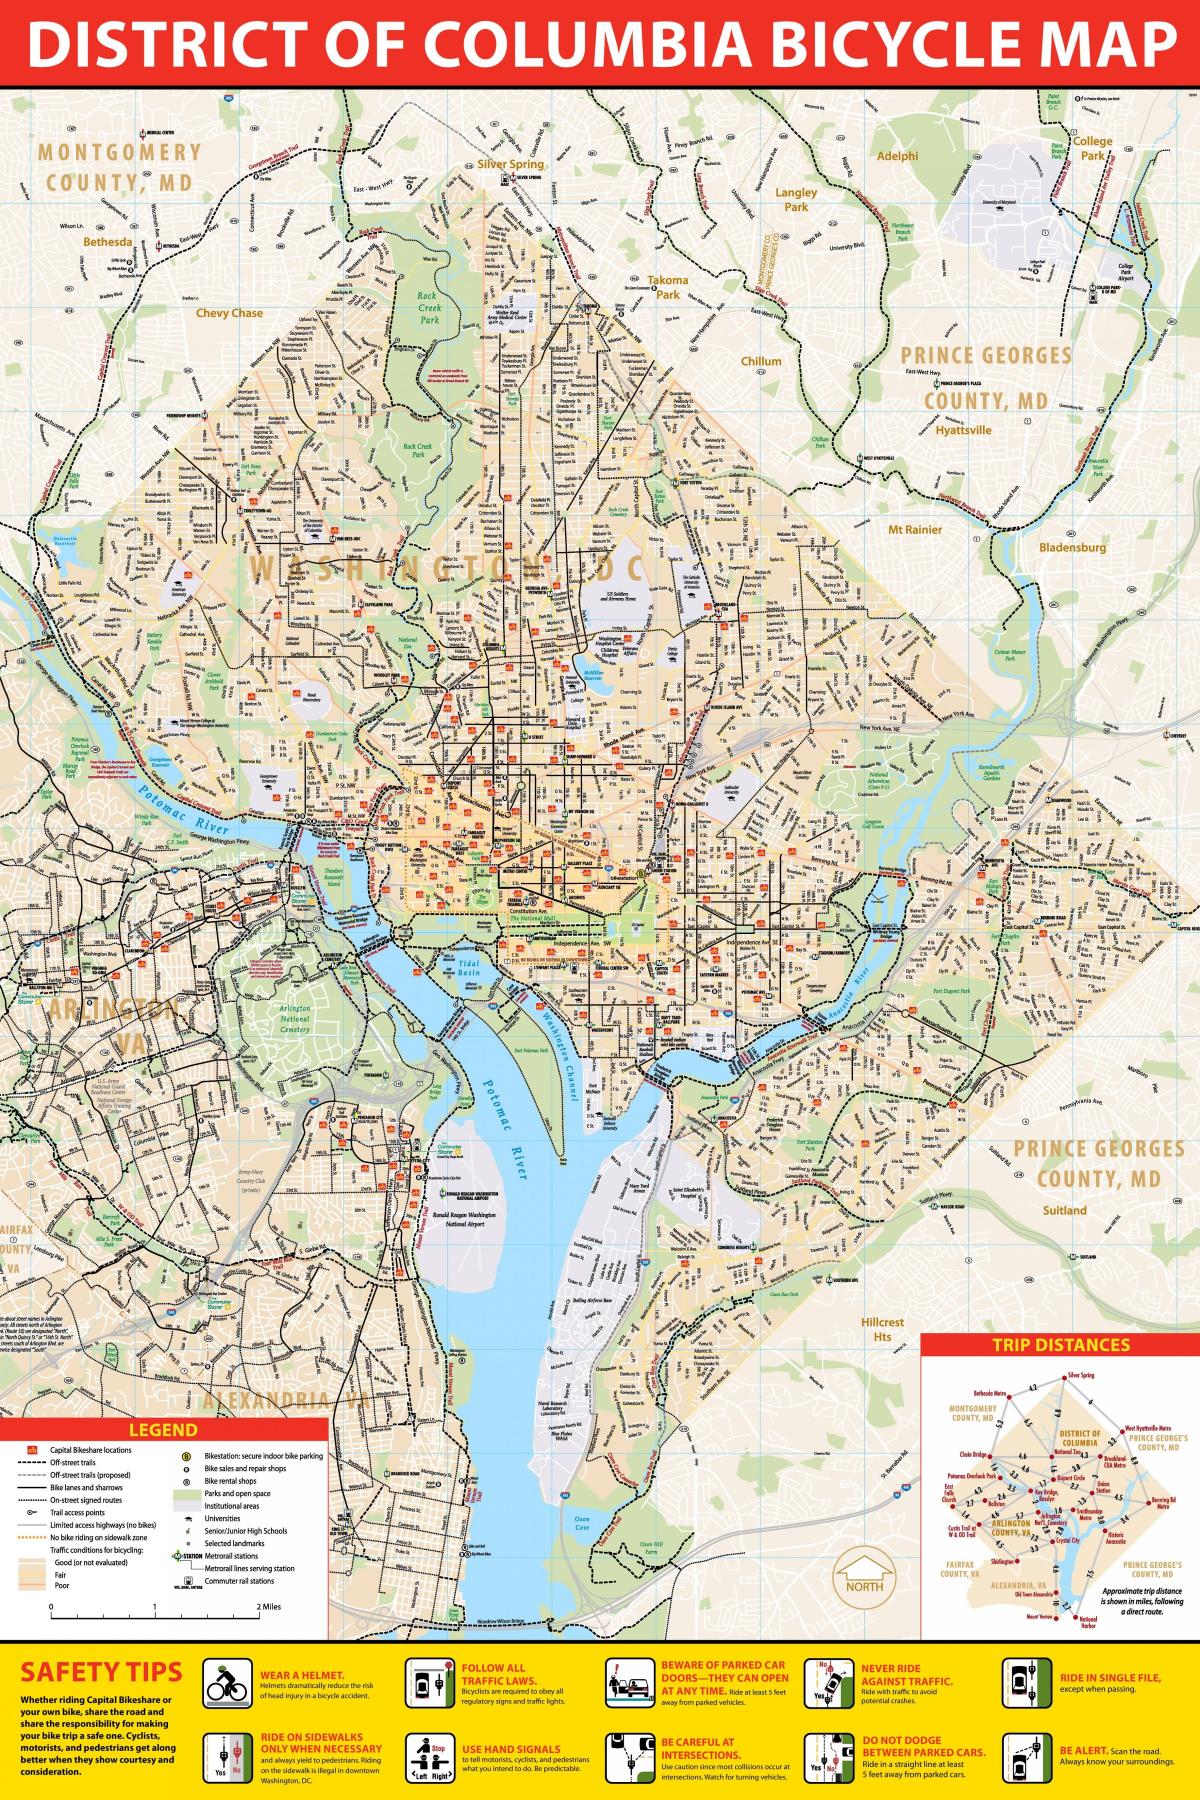 Вашингтон велосипеда карті